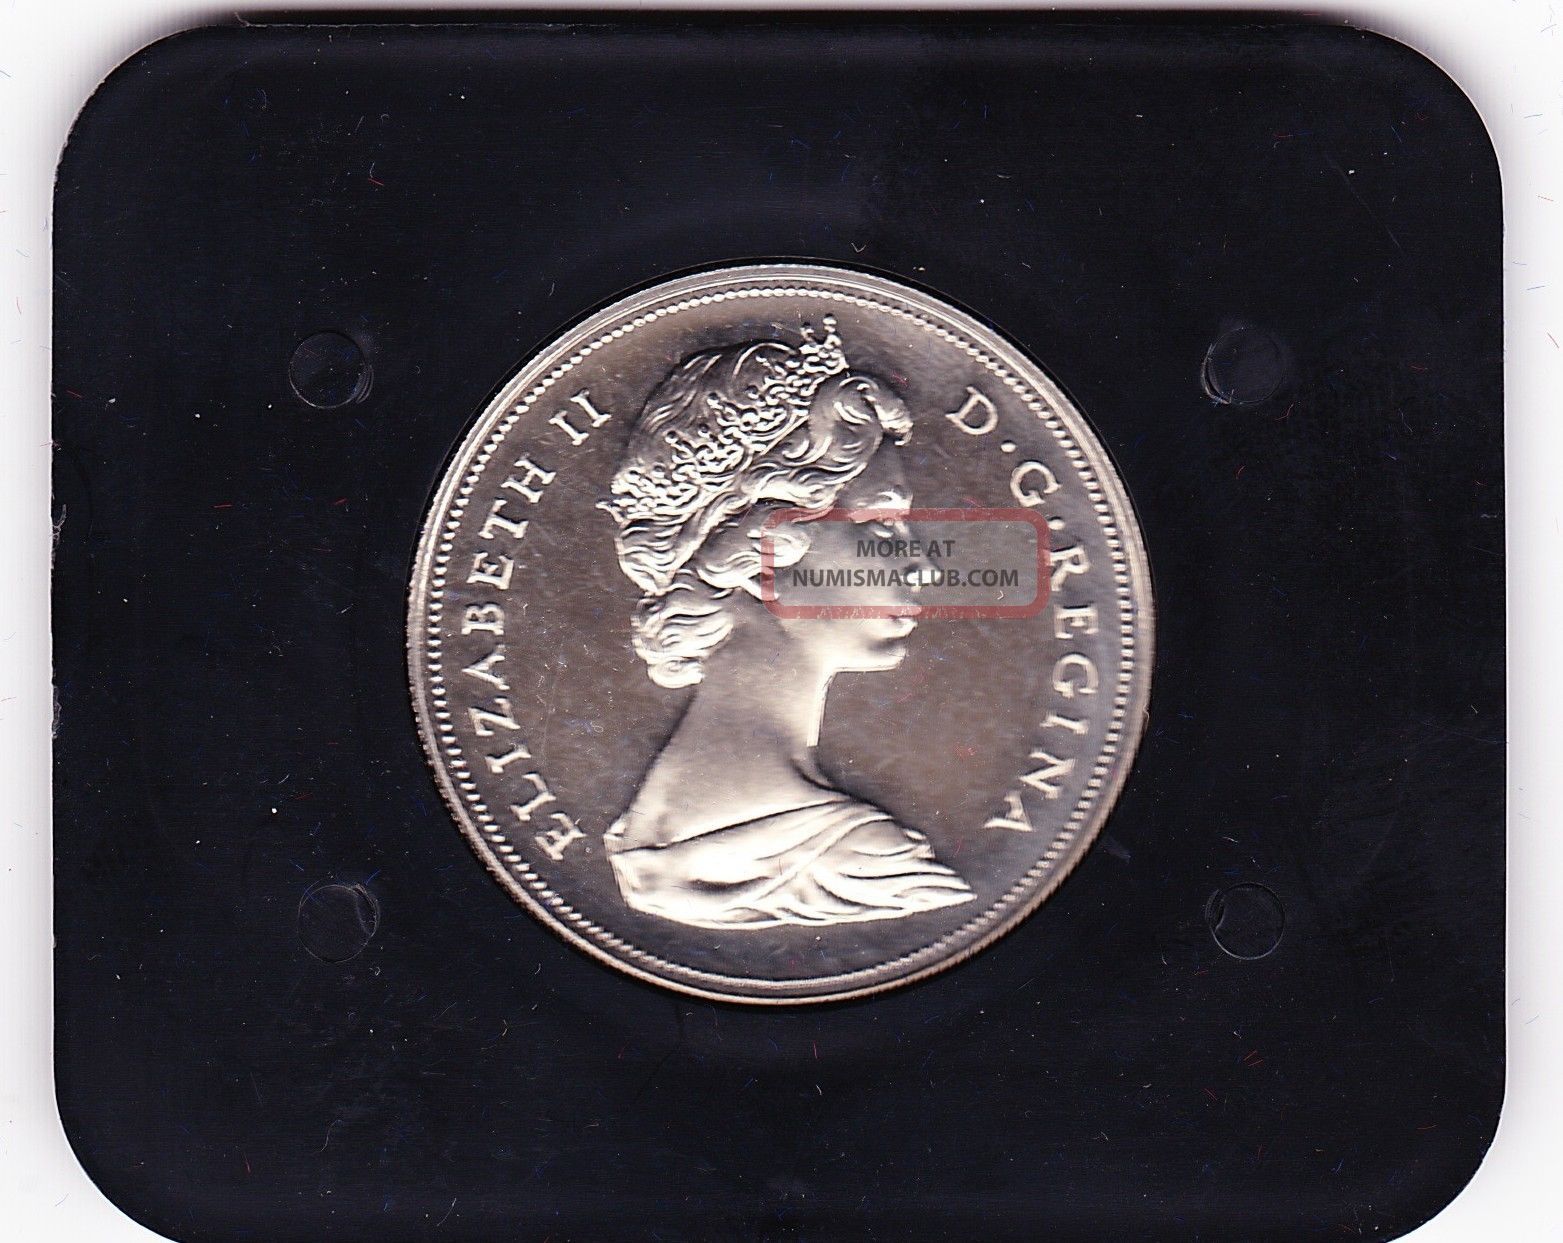 1972 Canadian Dollar Canada Nickel Unc With Case